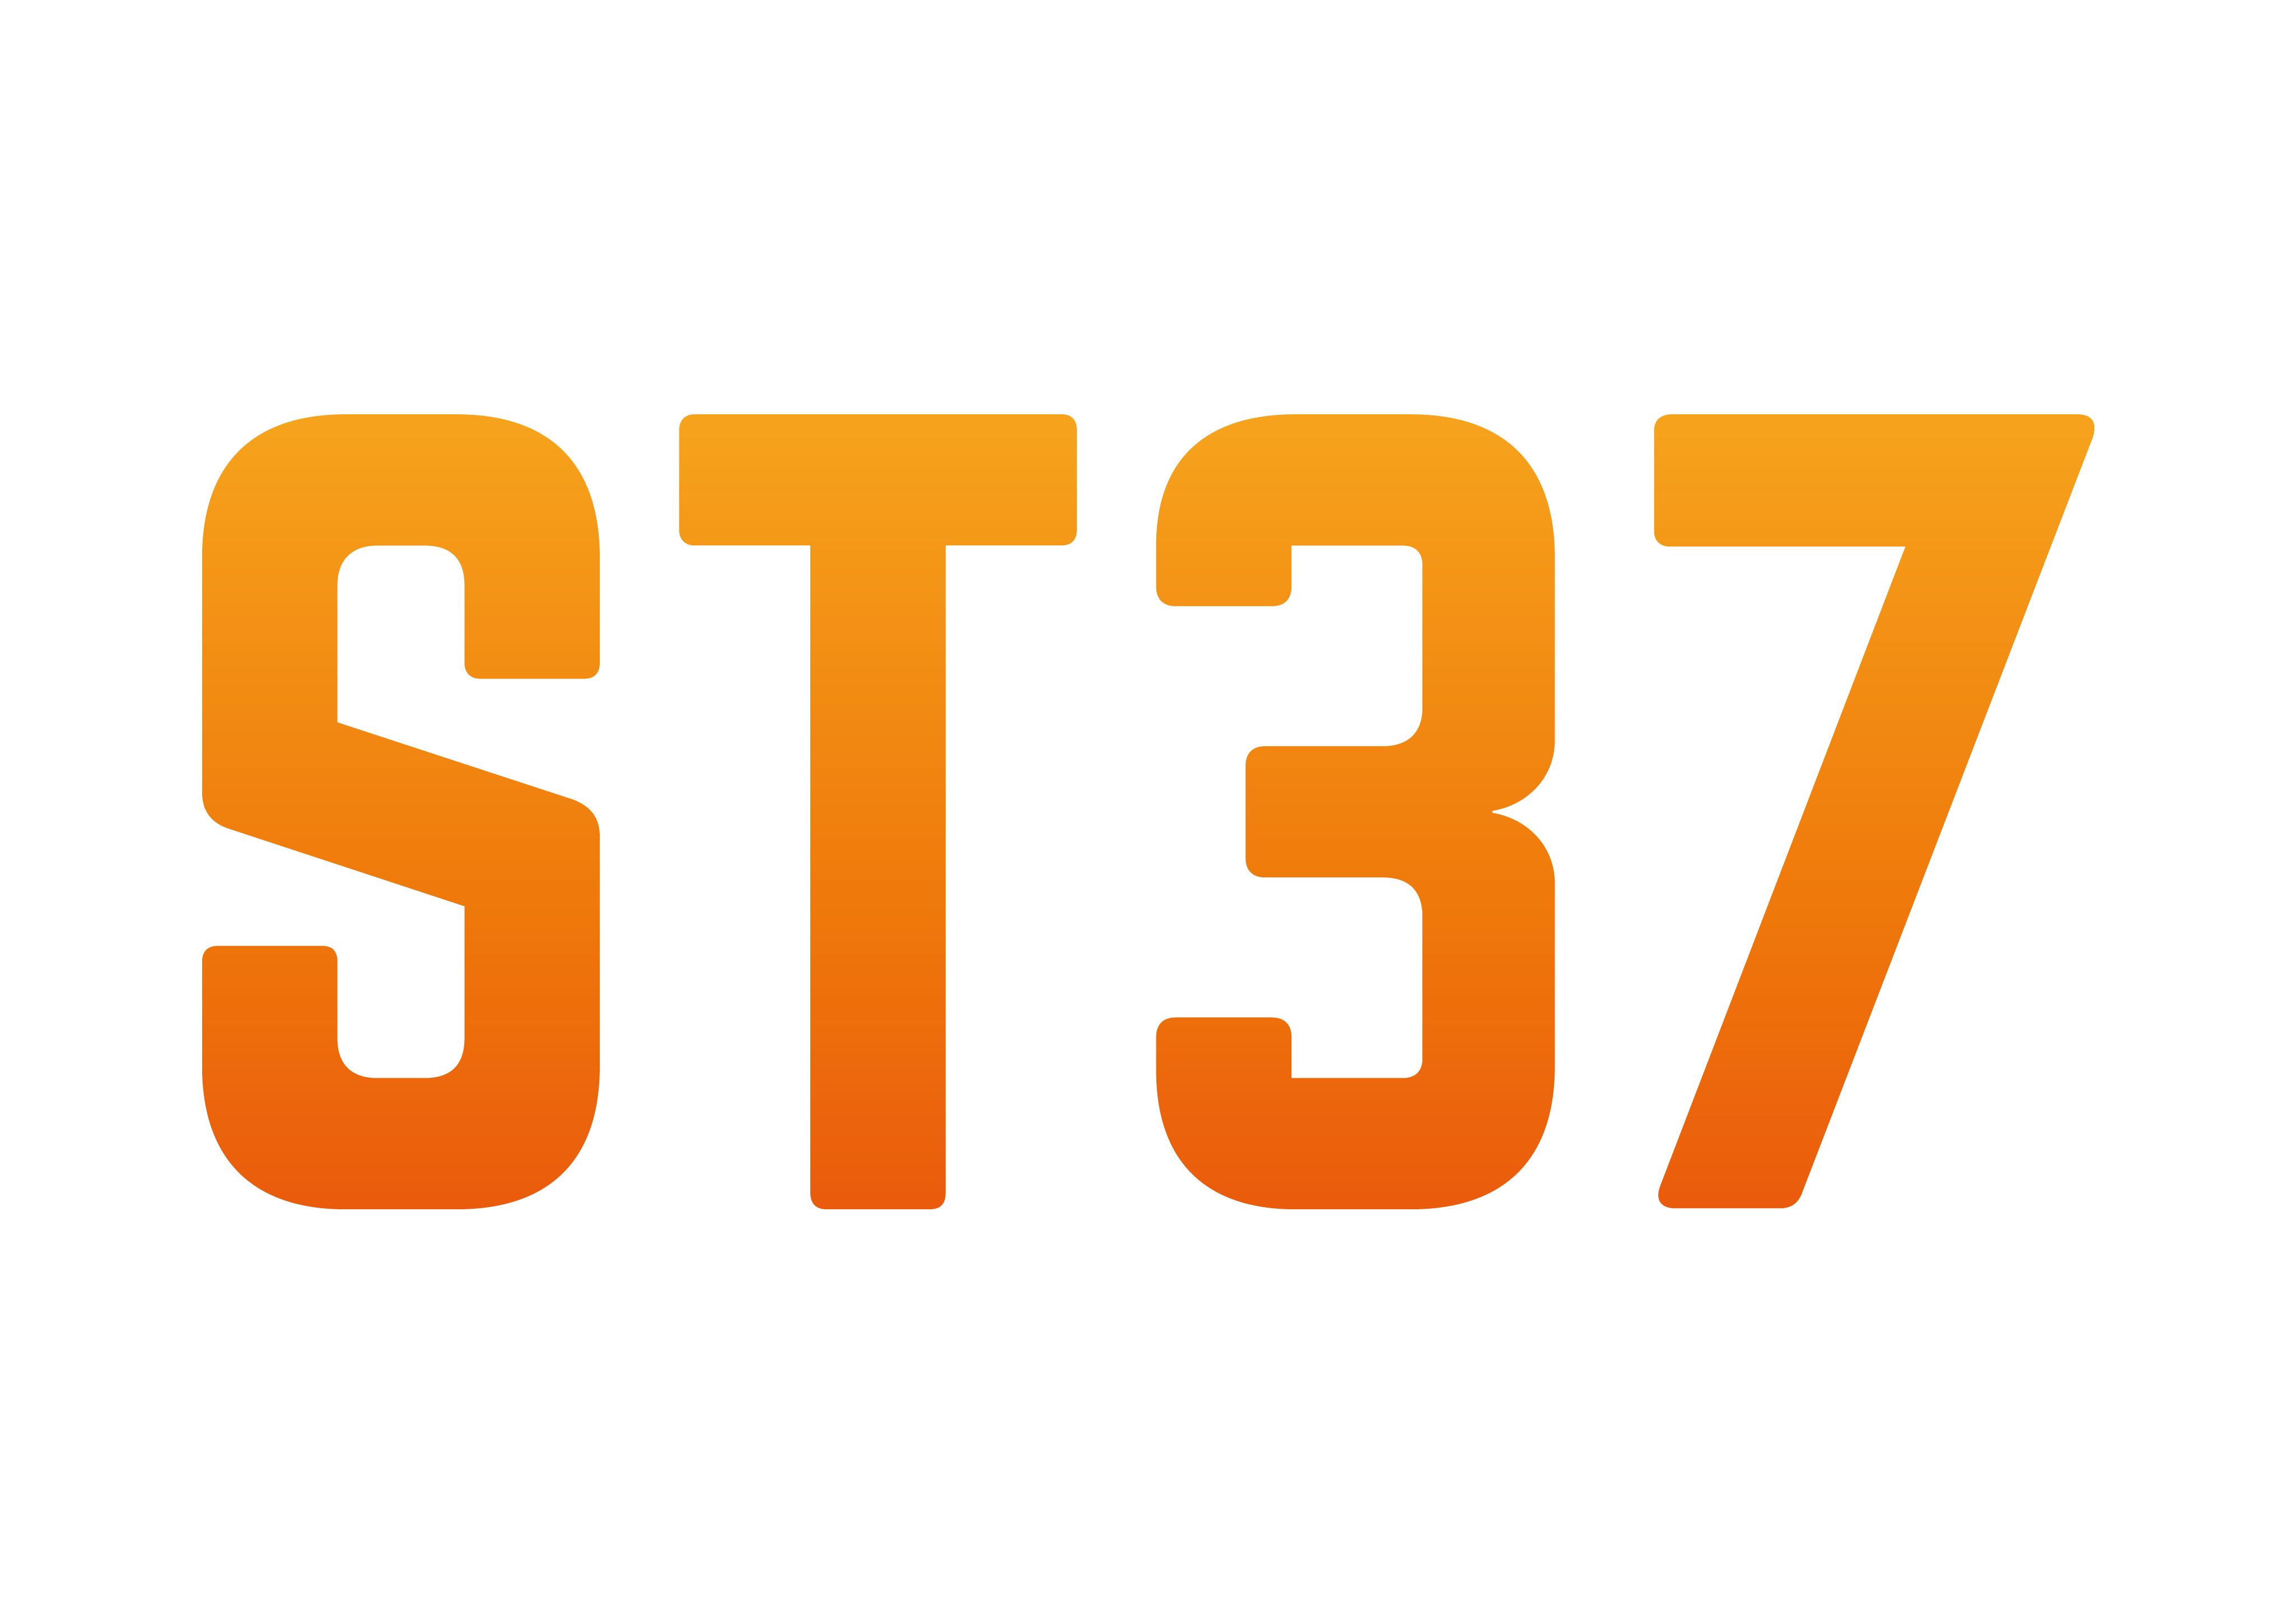 ST37 Sport et Technologie